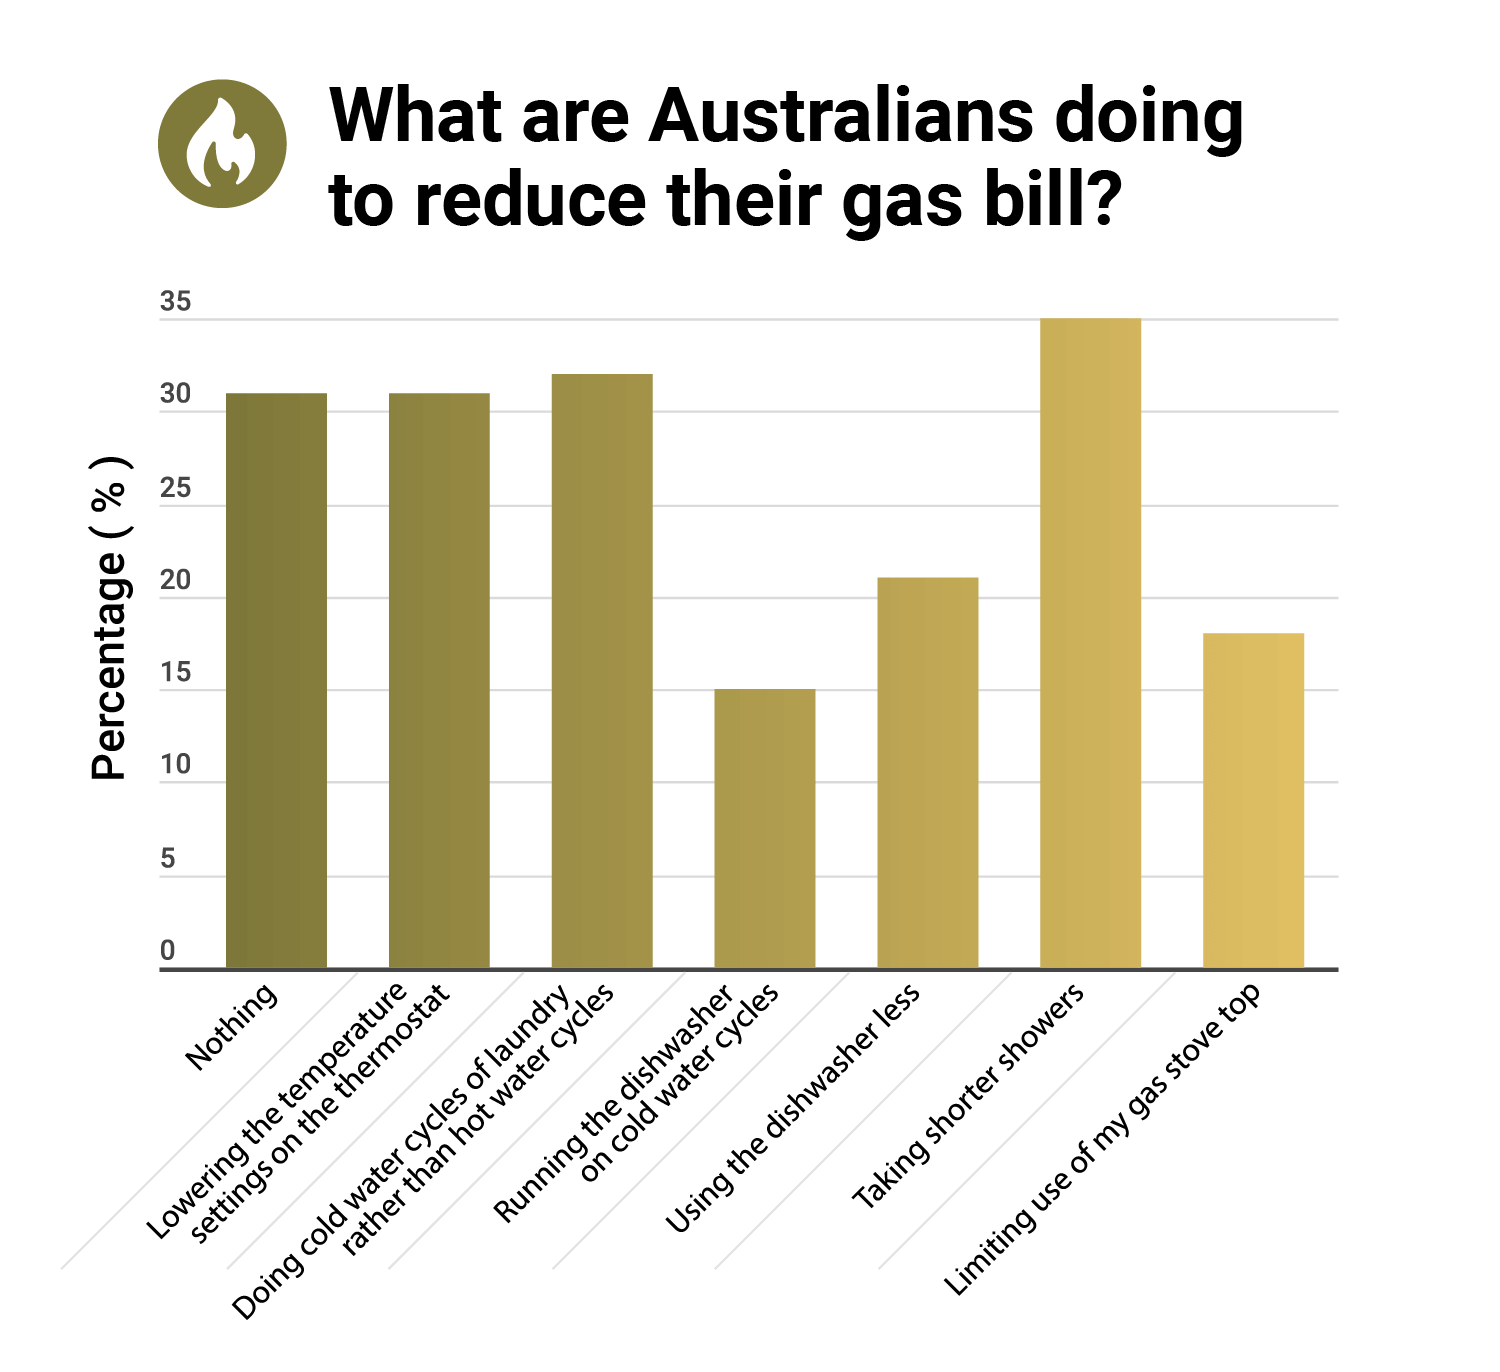 A bar chart showing how Australians combat gas bills